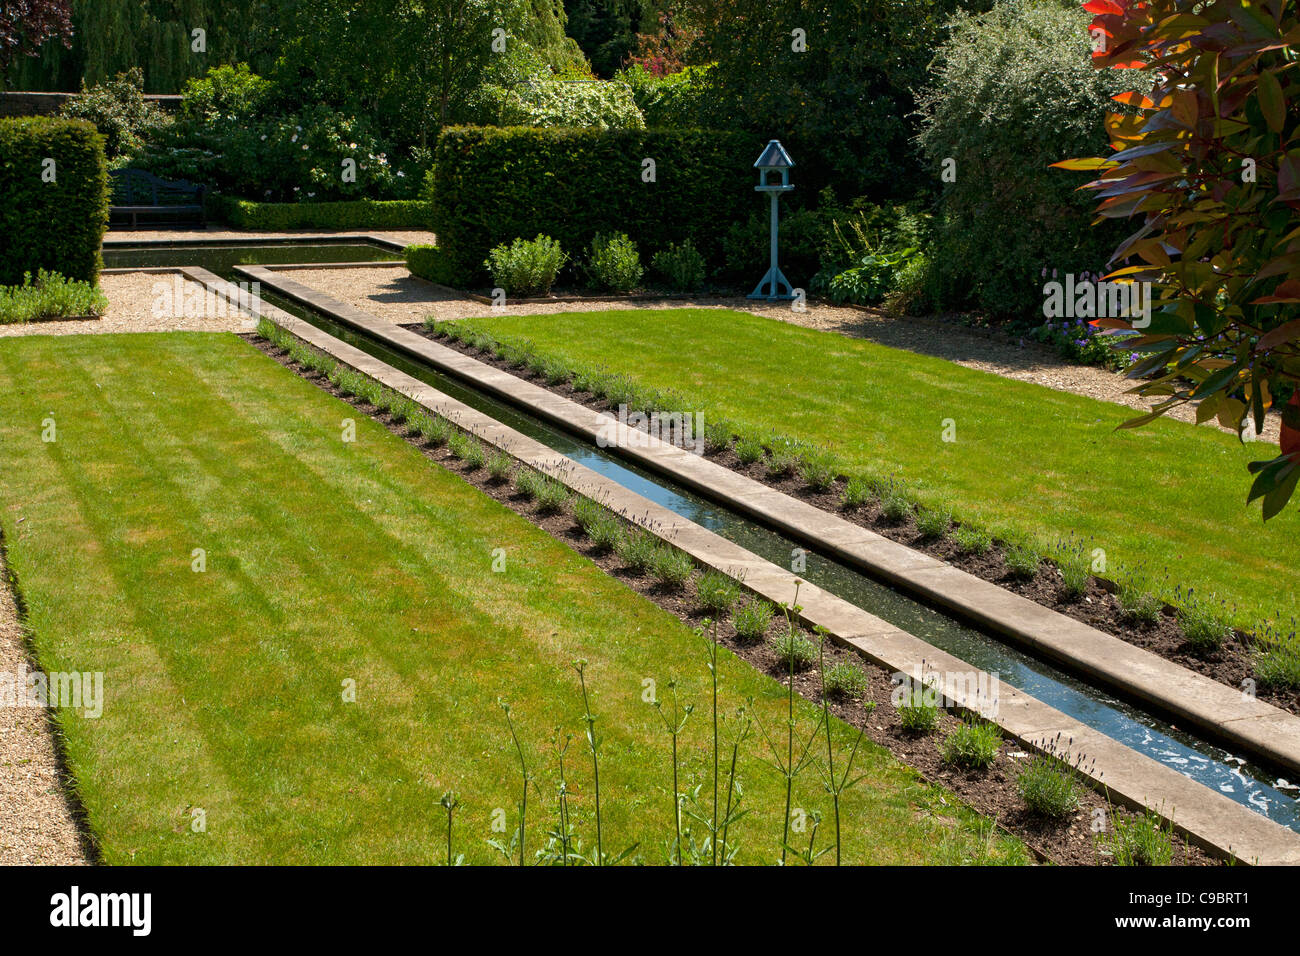 Rill característica del agua con bordes lavanda en jardín privado amurallado establecidos en un estilo formal con estanque como punto focal, Inglaterra. Foto de stock